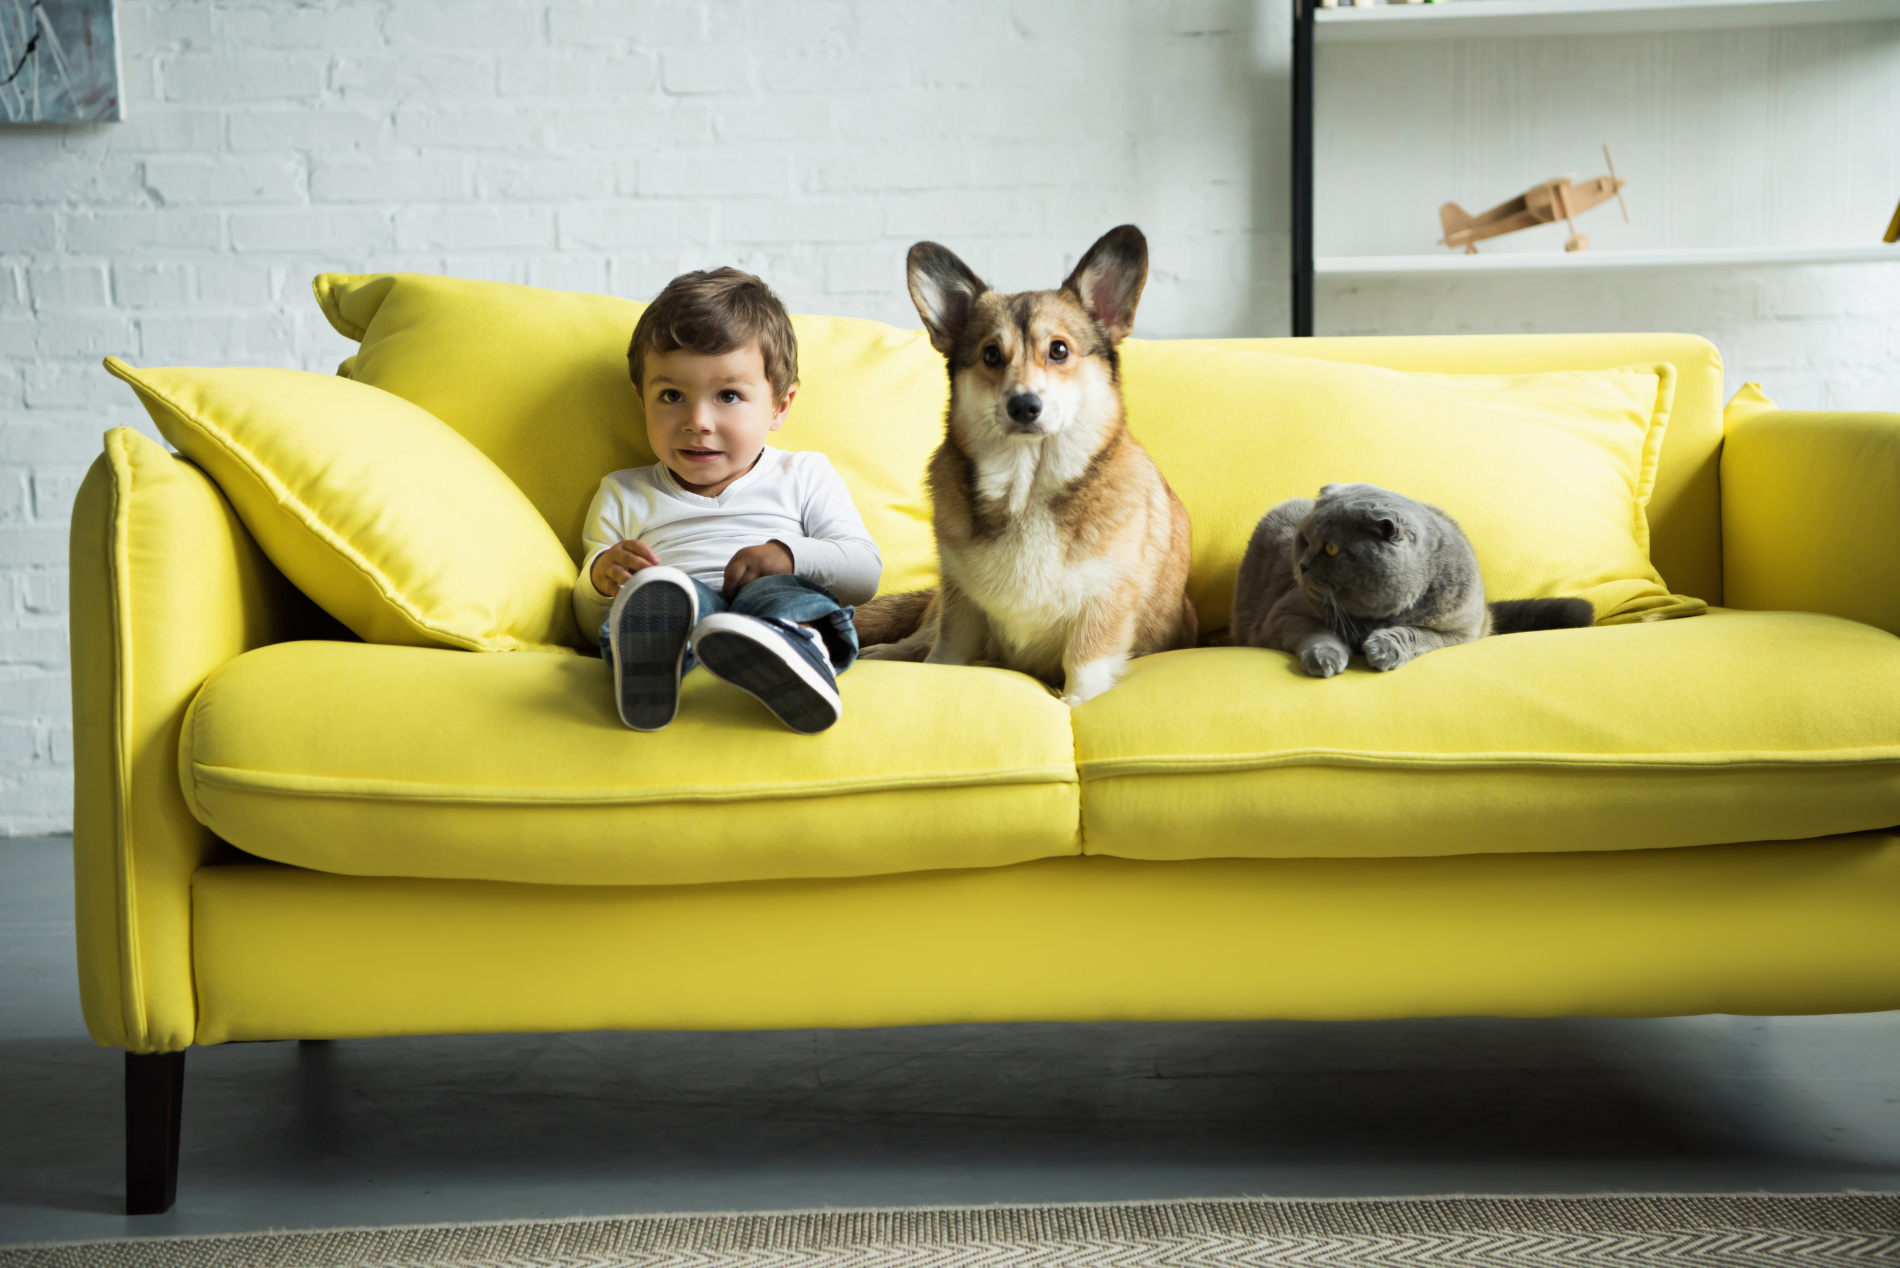 Criança sentada num sofá amarelo acompanhado por um cão atento e um gato que os olha.